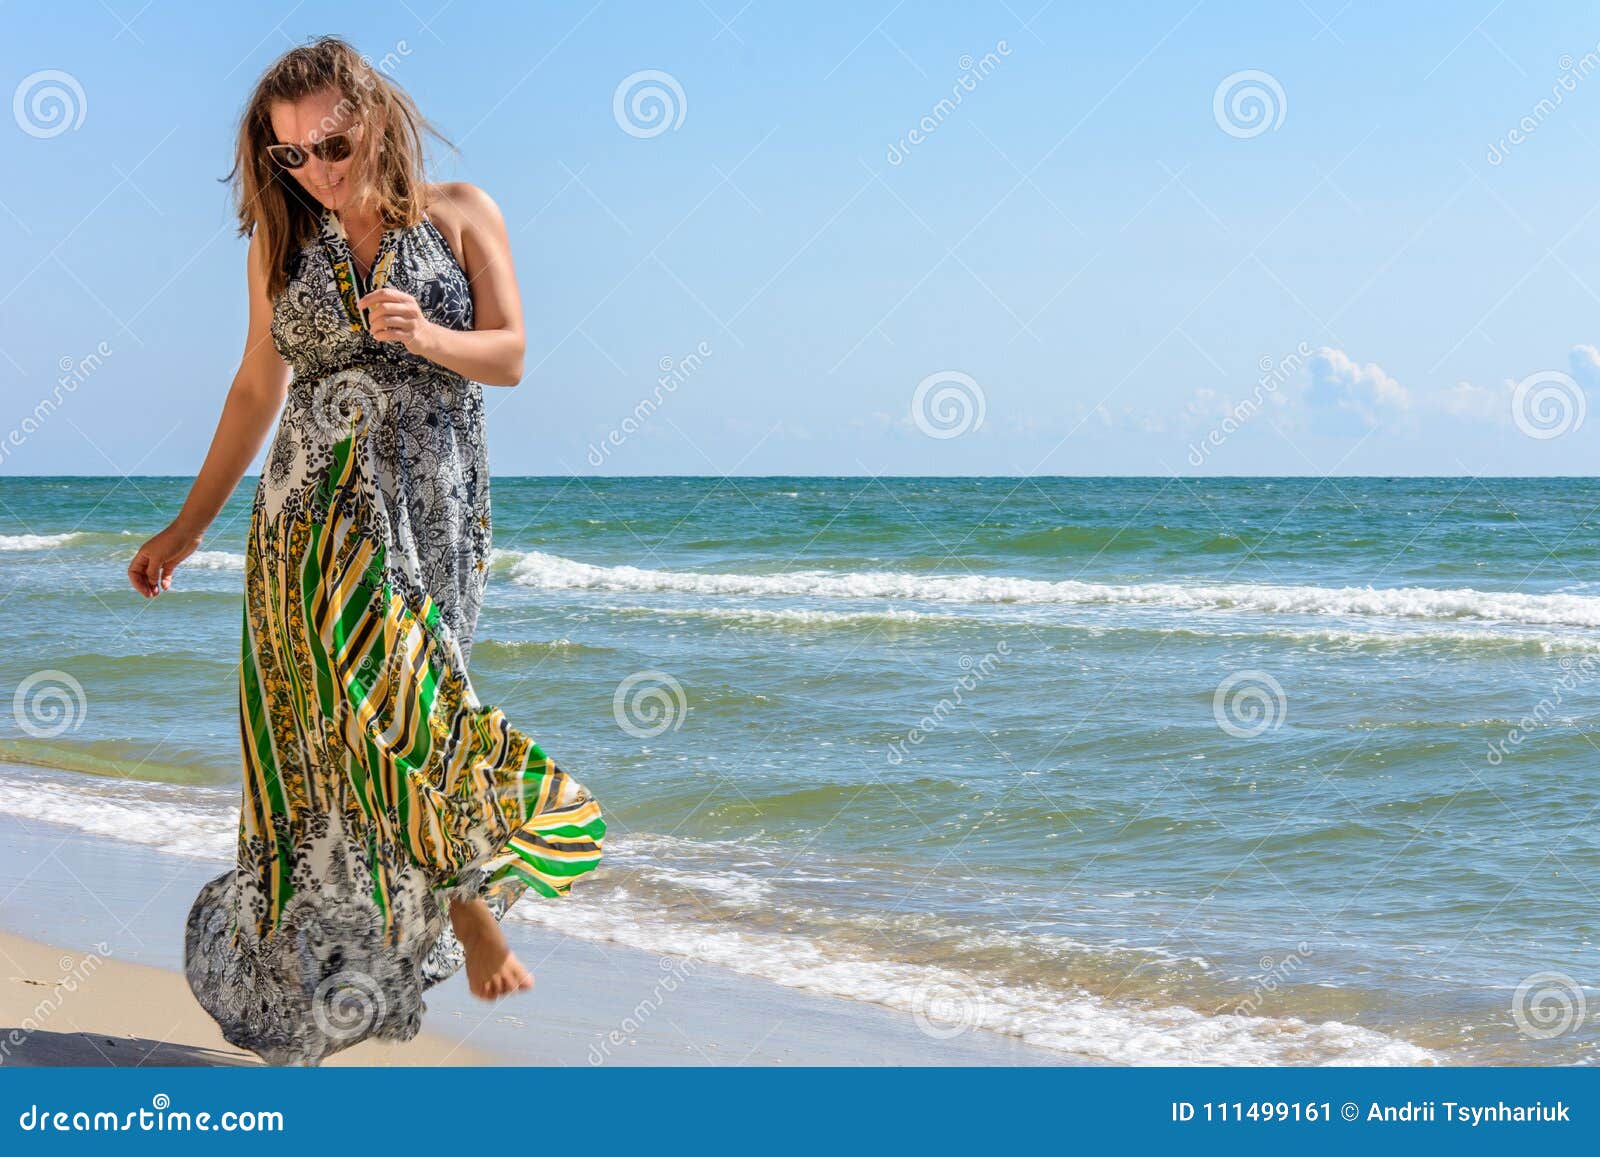 Una Que Corre a Lo Largo De Una Playa Mar Negro En Un Vestido Para Arriba Contra El Cielo Imagen de archivo - Imagen de recurso, 111499161